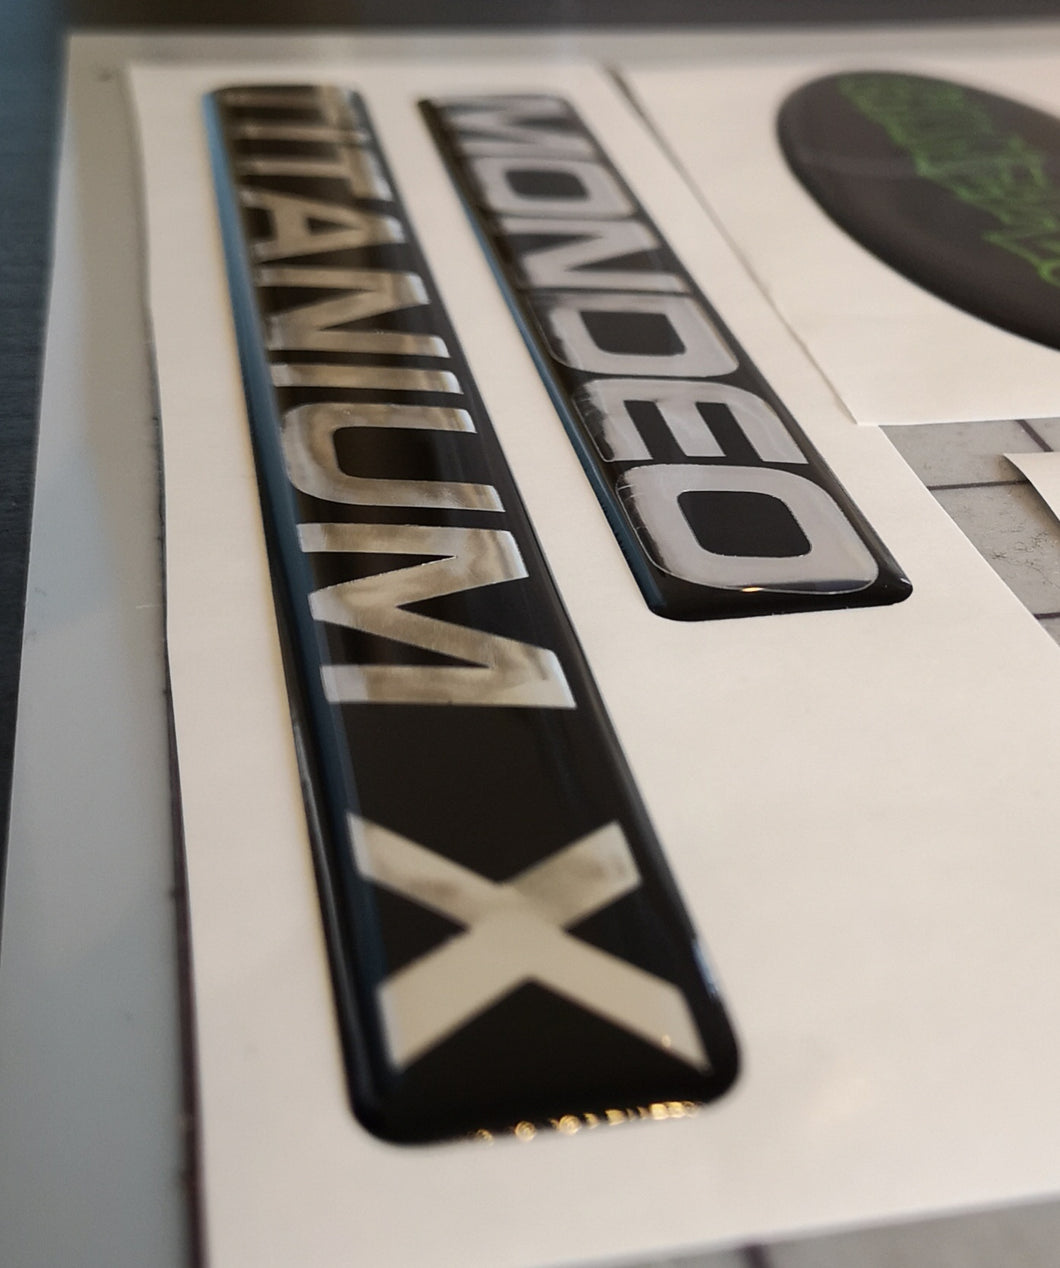 Mondeo Titanium X replacement gel badges